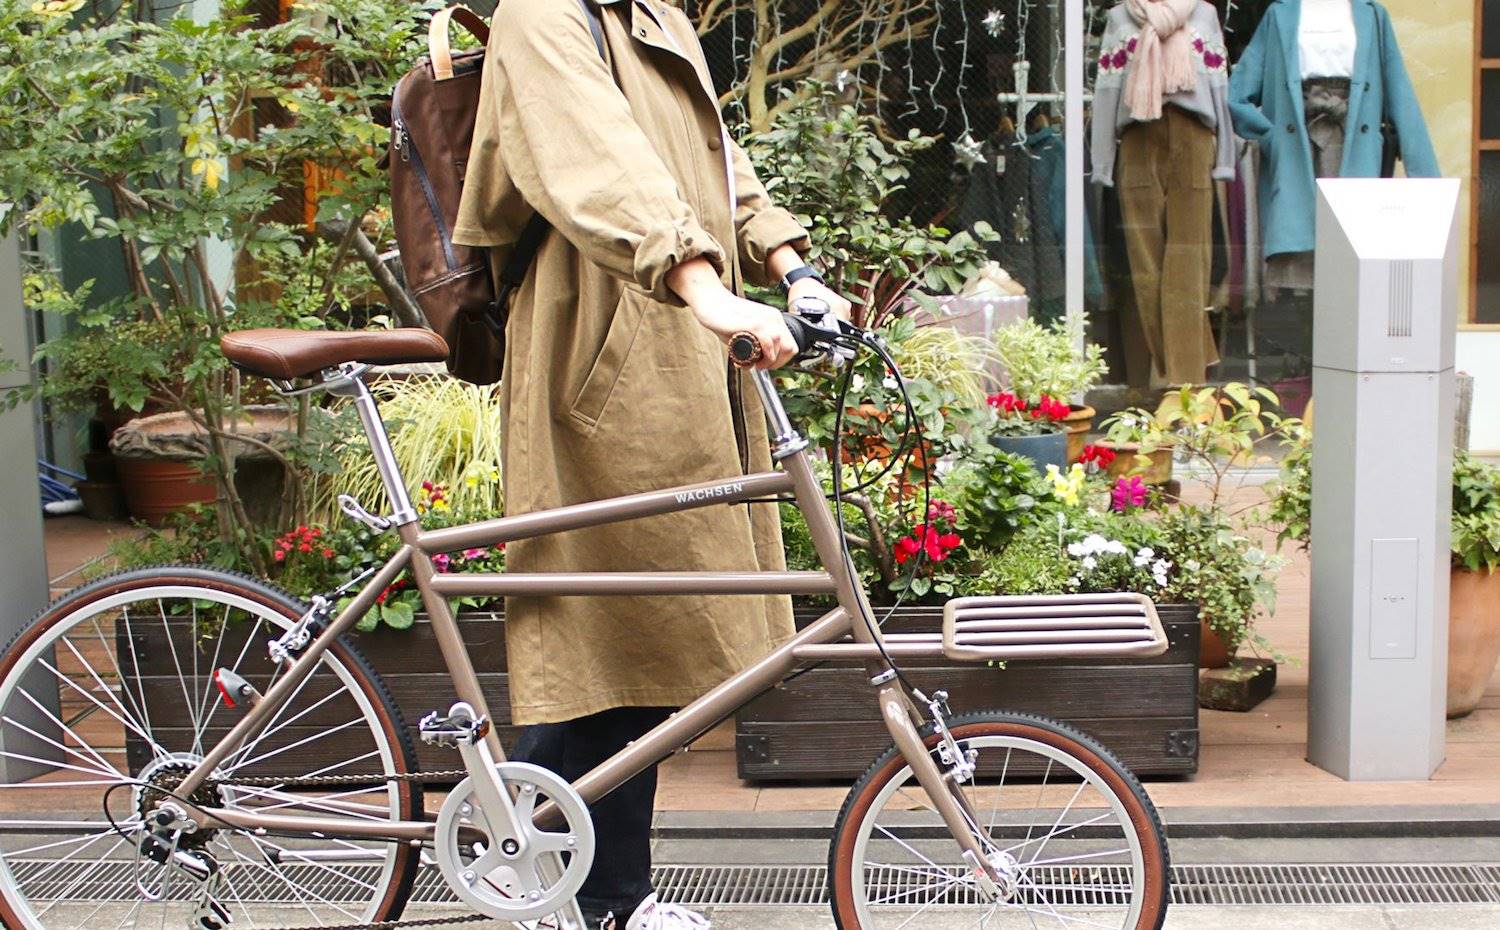 Un buen método para moverse en la ciudad es alquilar una bicicleta.